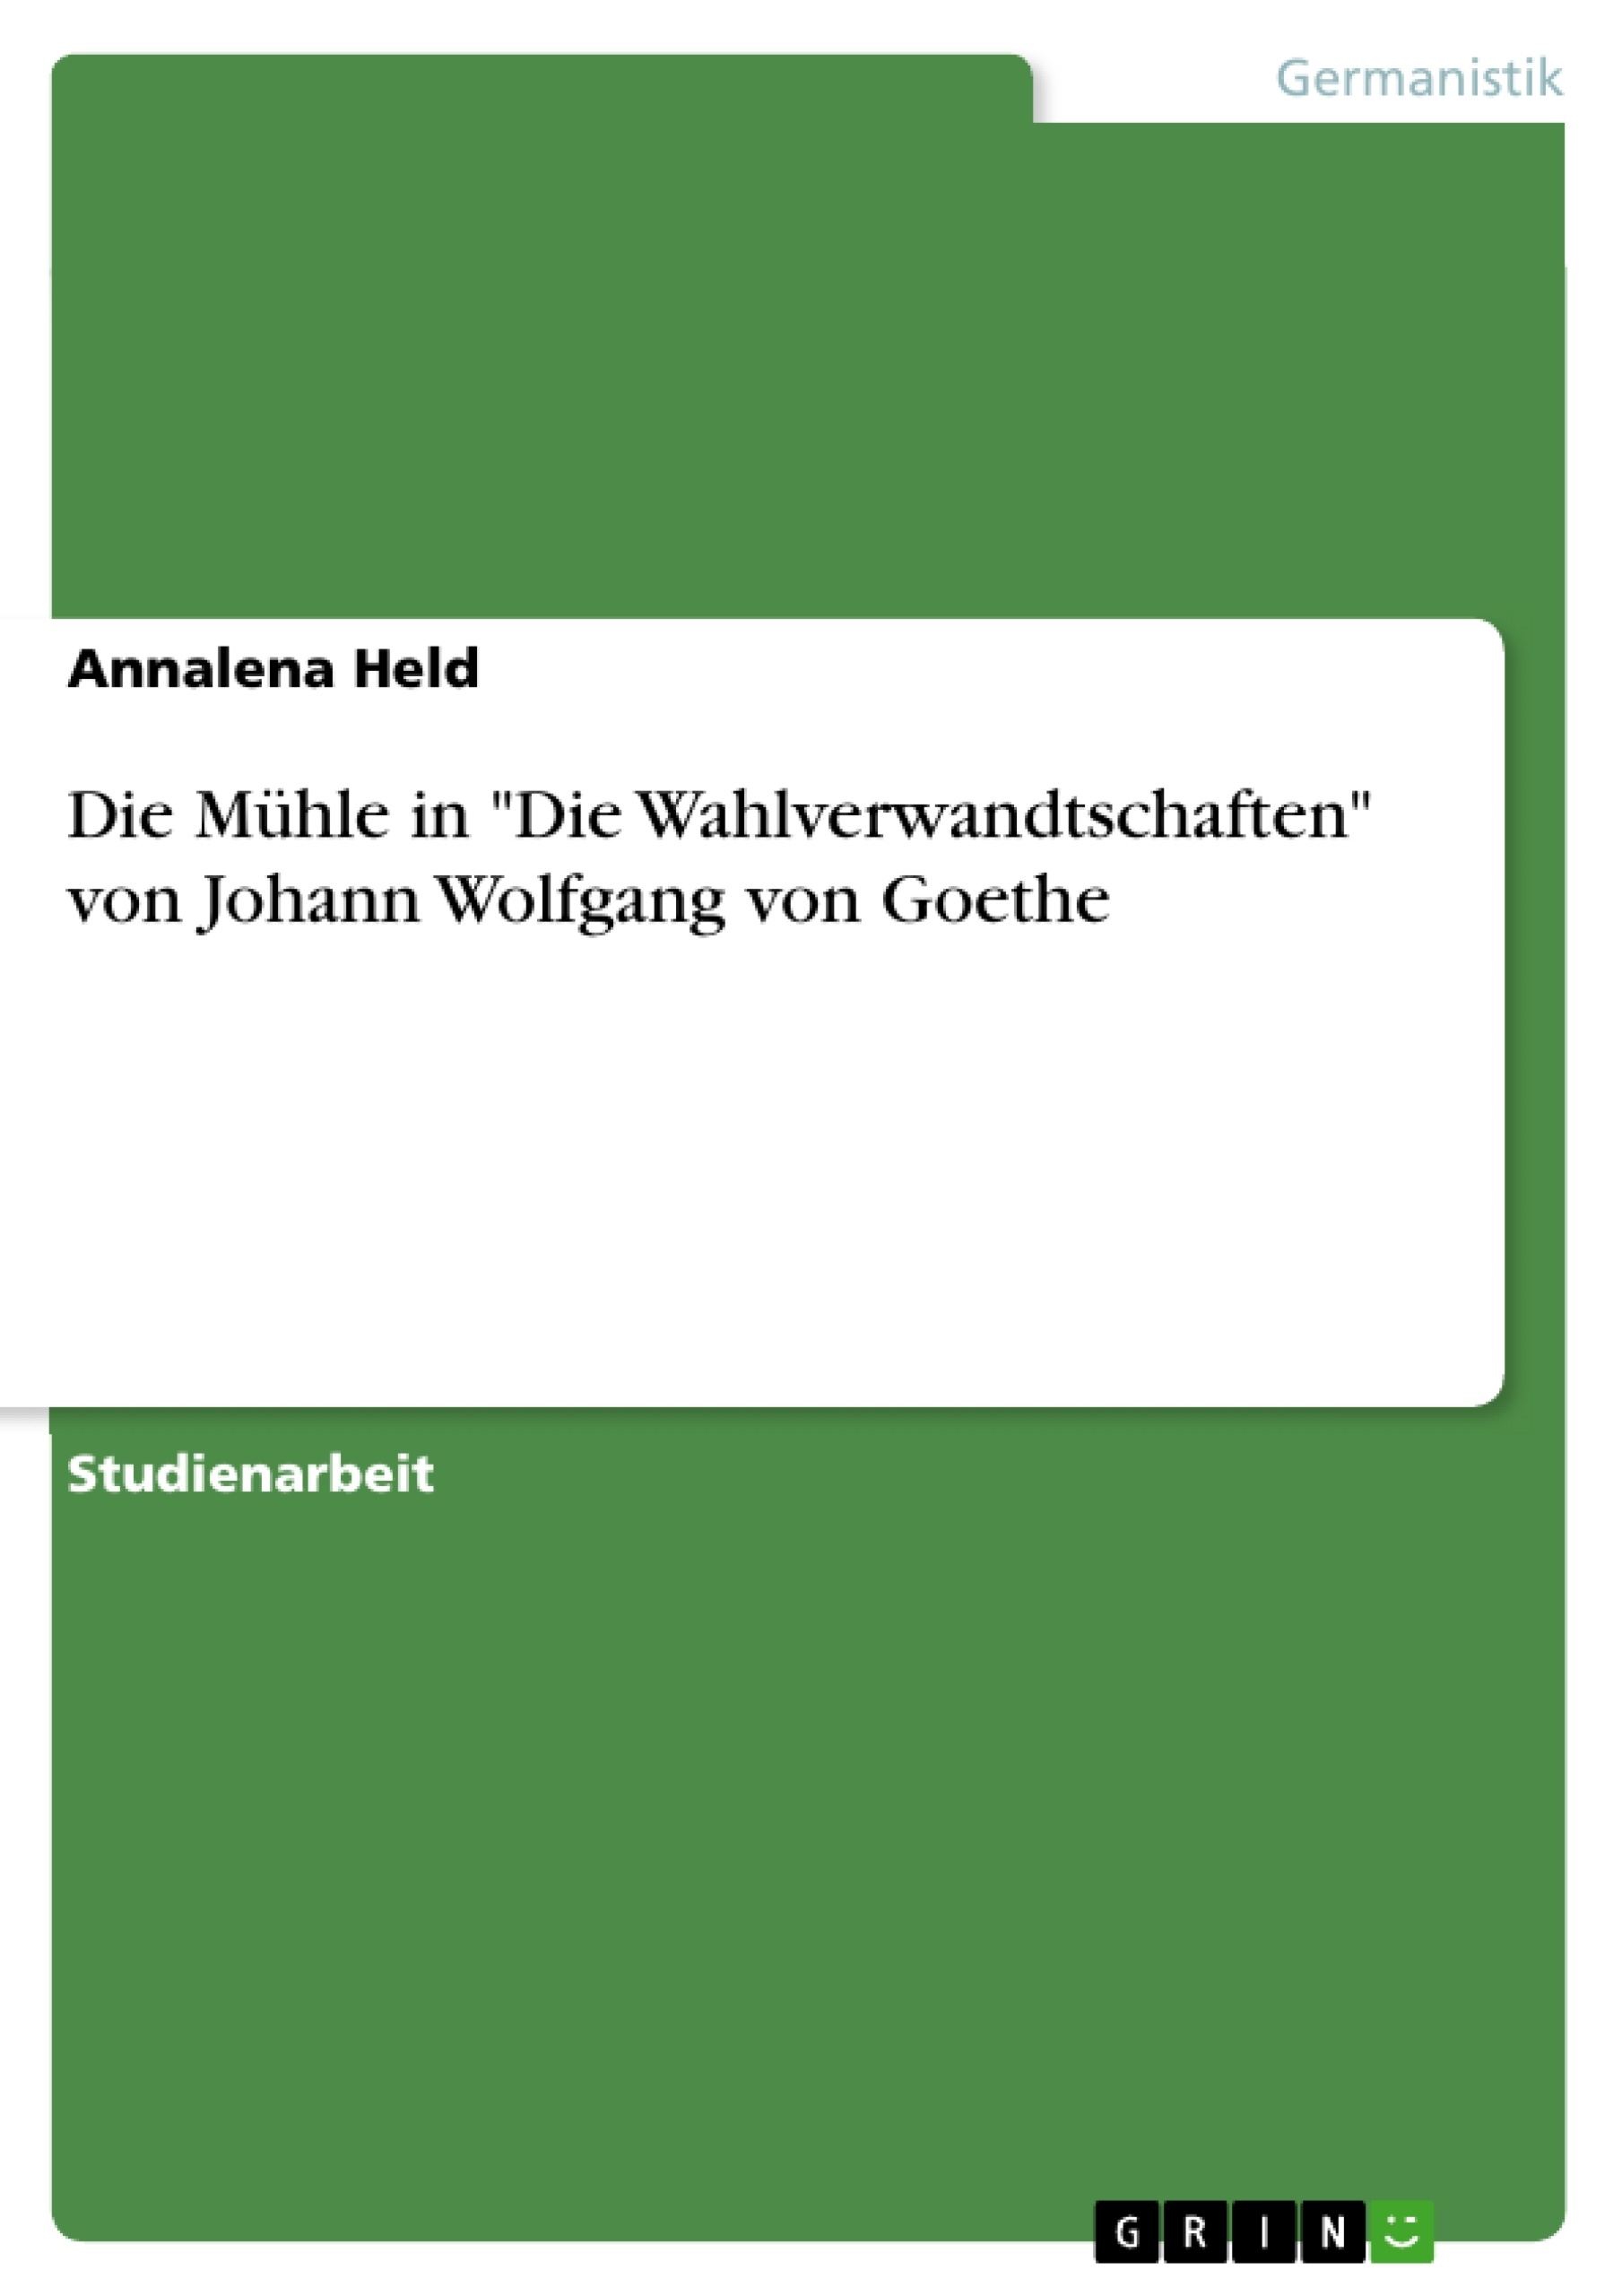 Title: Die Mühle in "Die Wahlverwandtschaften" von Johann Wolfgang von Goethe